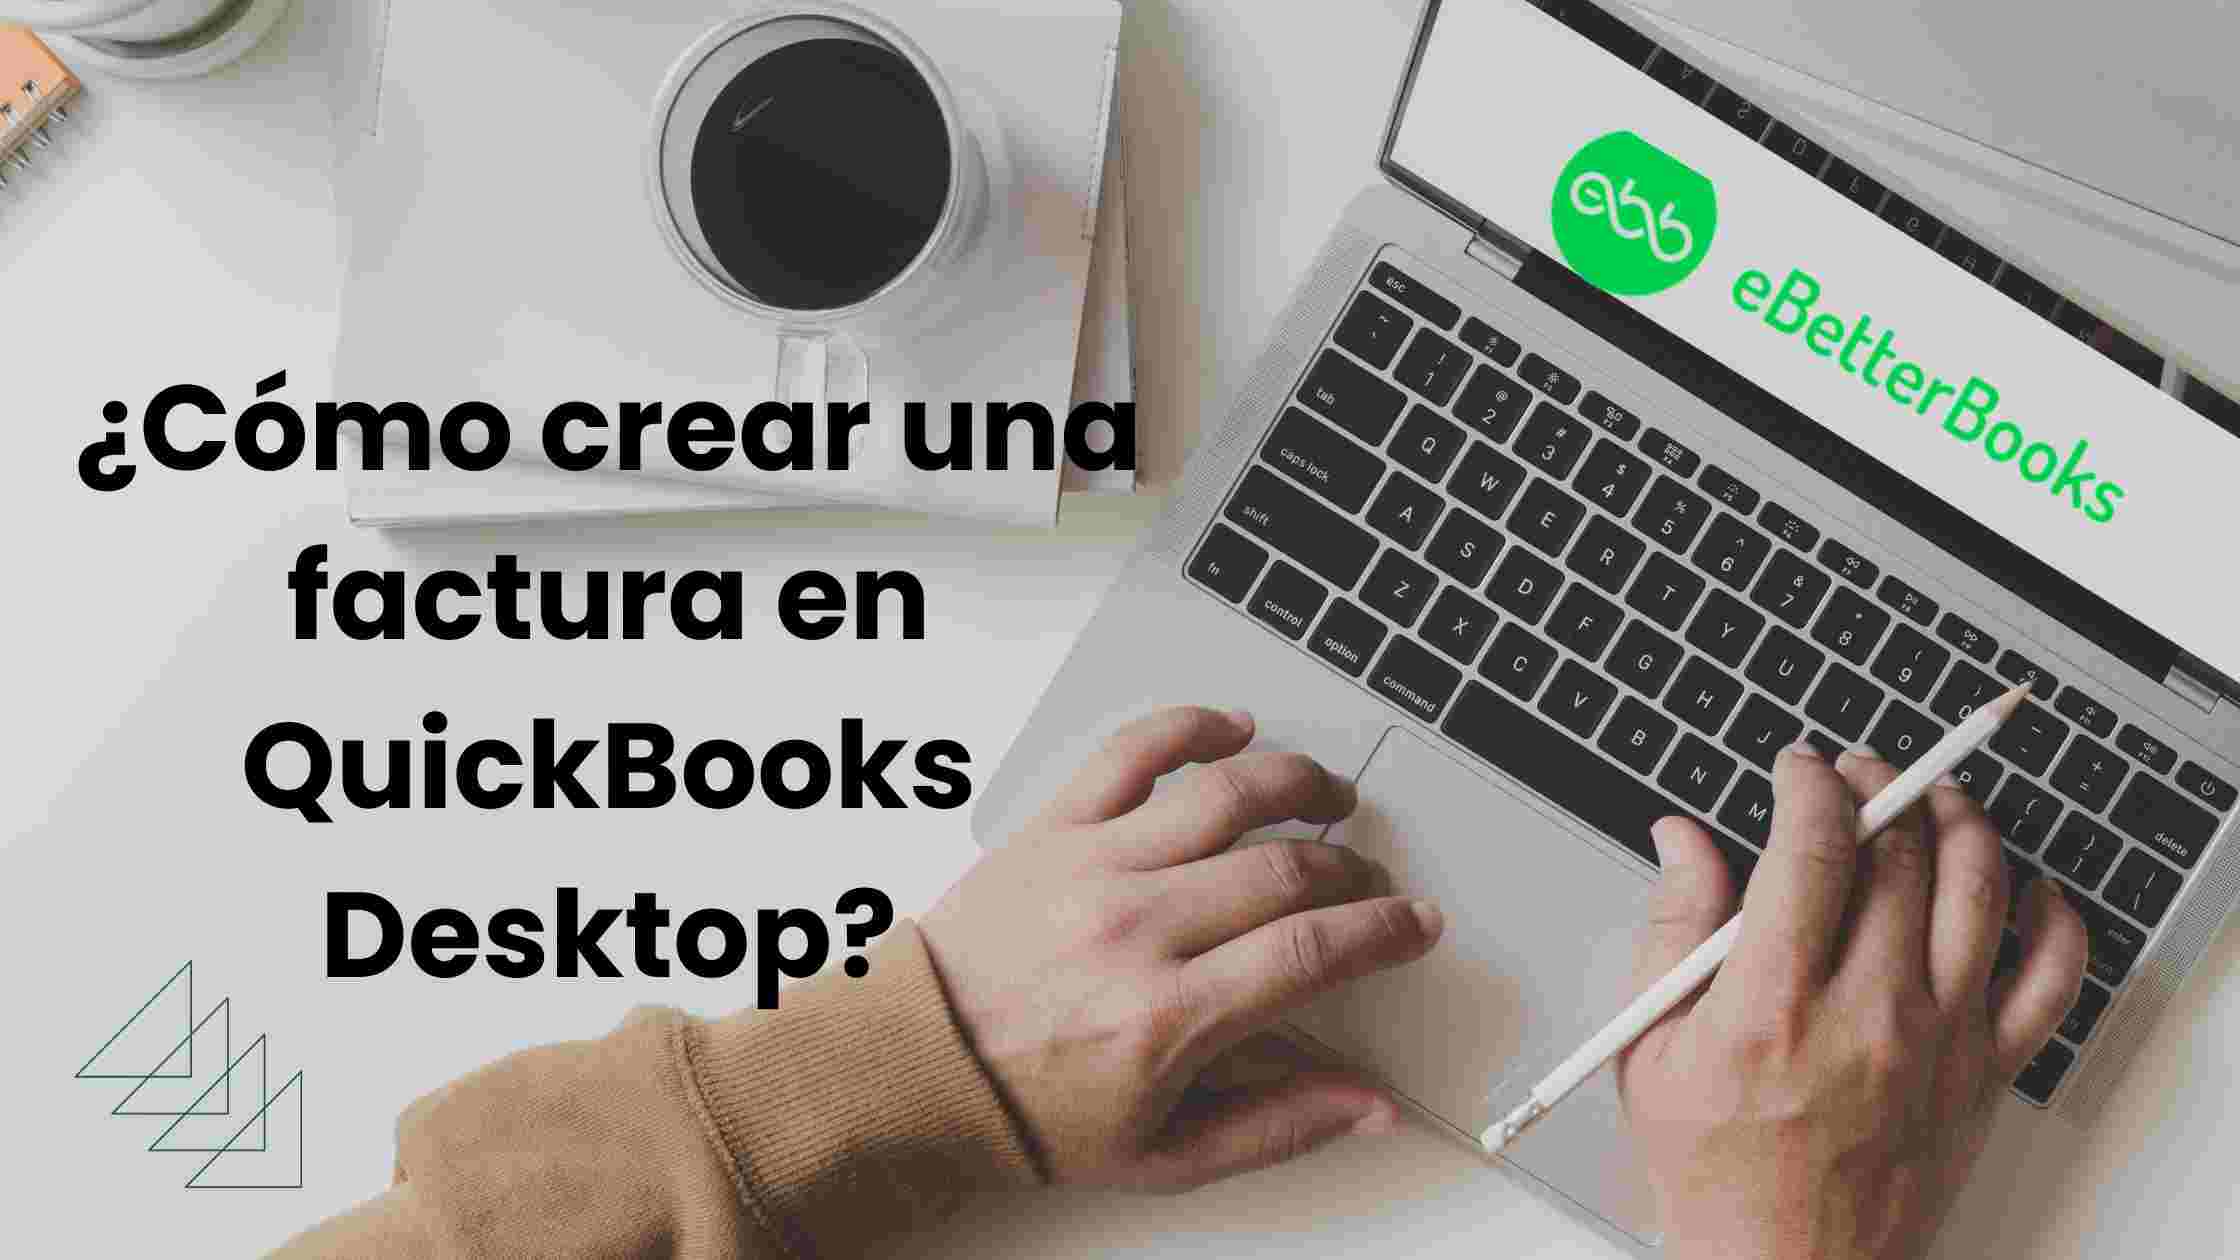 ¿Cómo crear una factura en QuickBooks Desktop?